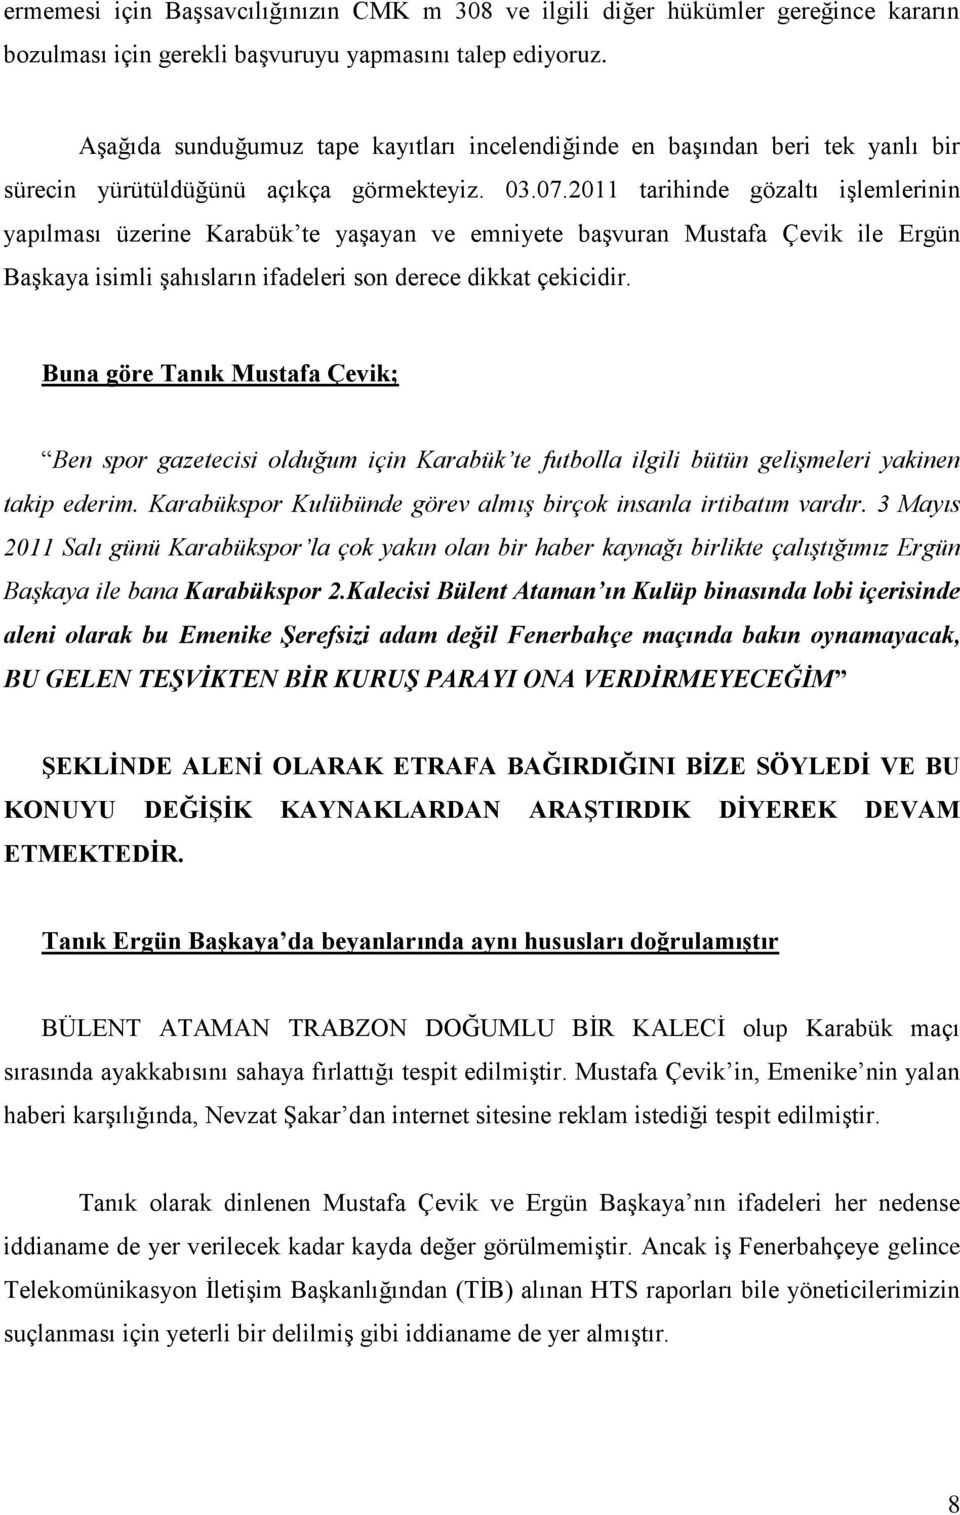 2011 tarihinde gözaltı işlemlerinin yapılması üzerine Karabük te yaşayan ve emniyete başvuran Mustafa Çevik ile Ergün Başkaya isimli şahısların ifadeleri son derece dikkat çekicidir.